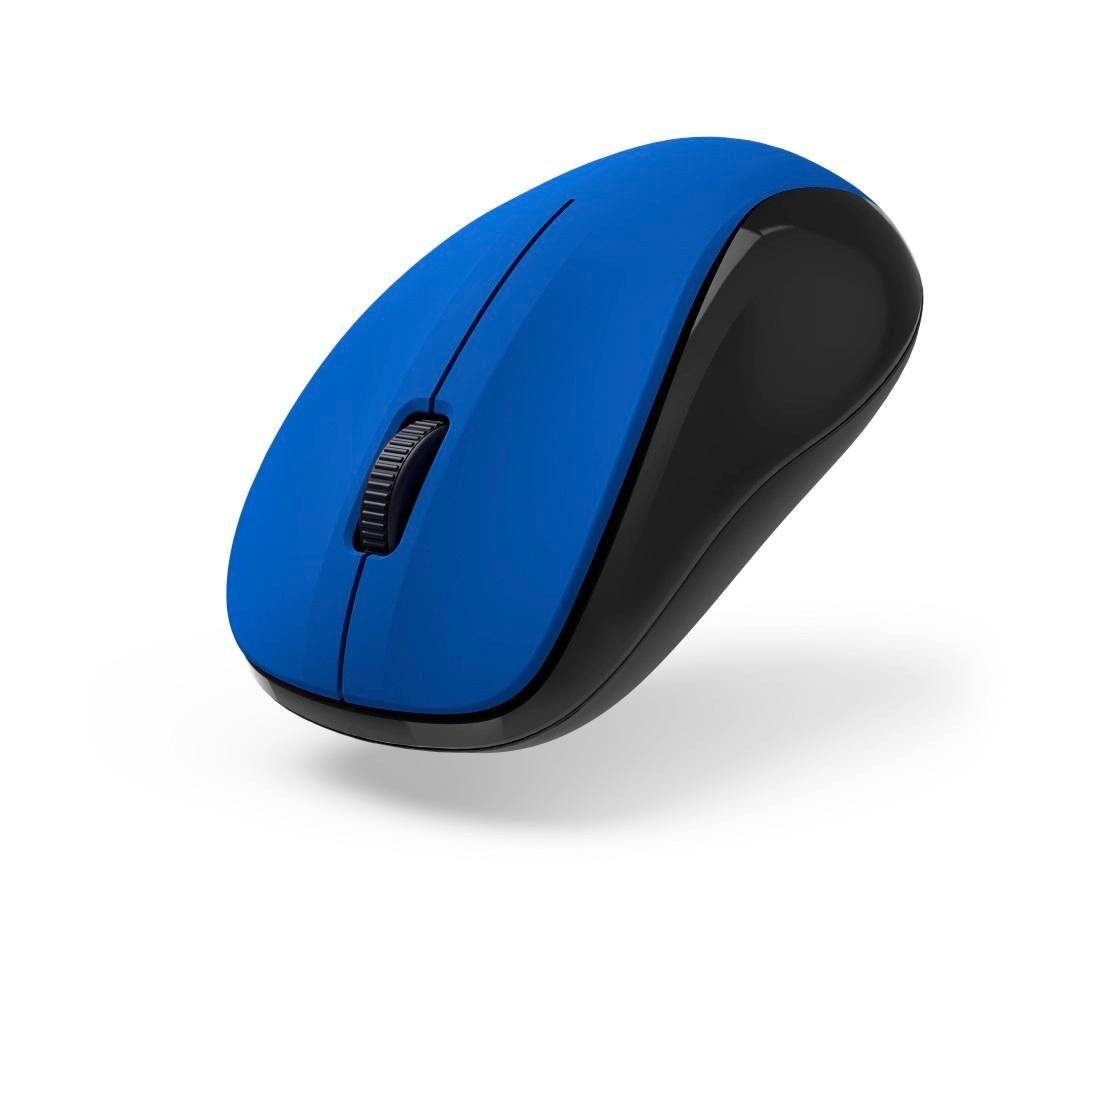 Maus blau Hama V2", USB "MW-300 geräuschlos, Tasten 3 Funkmaus Empfänger Optische